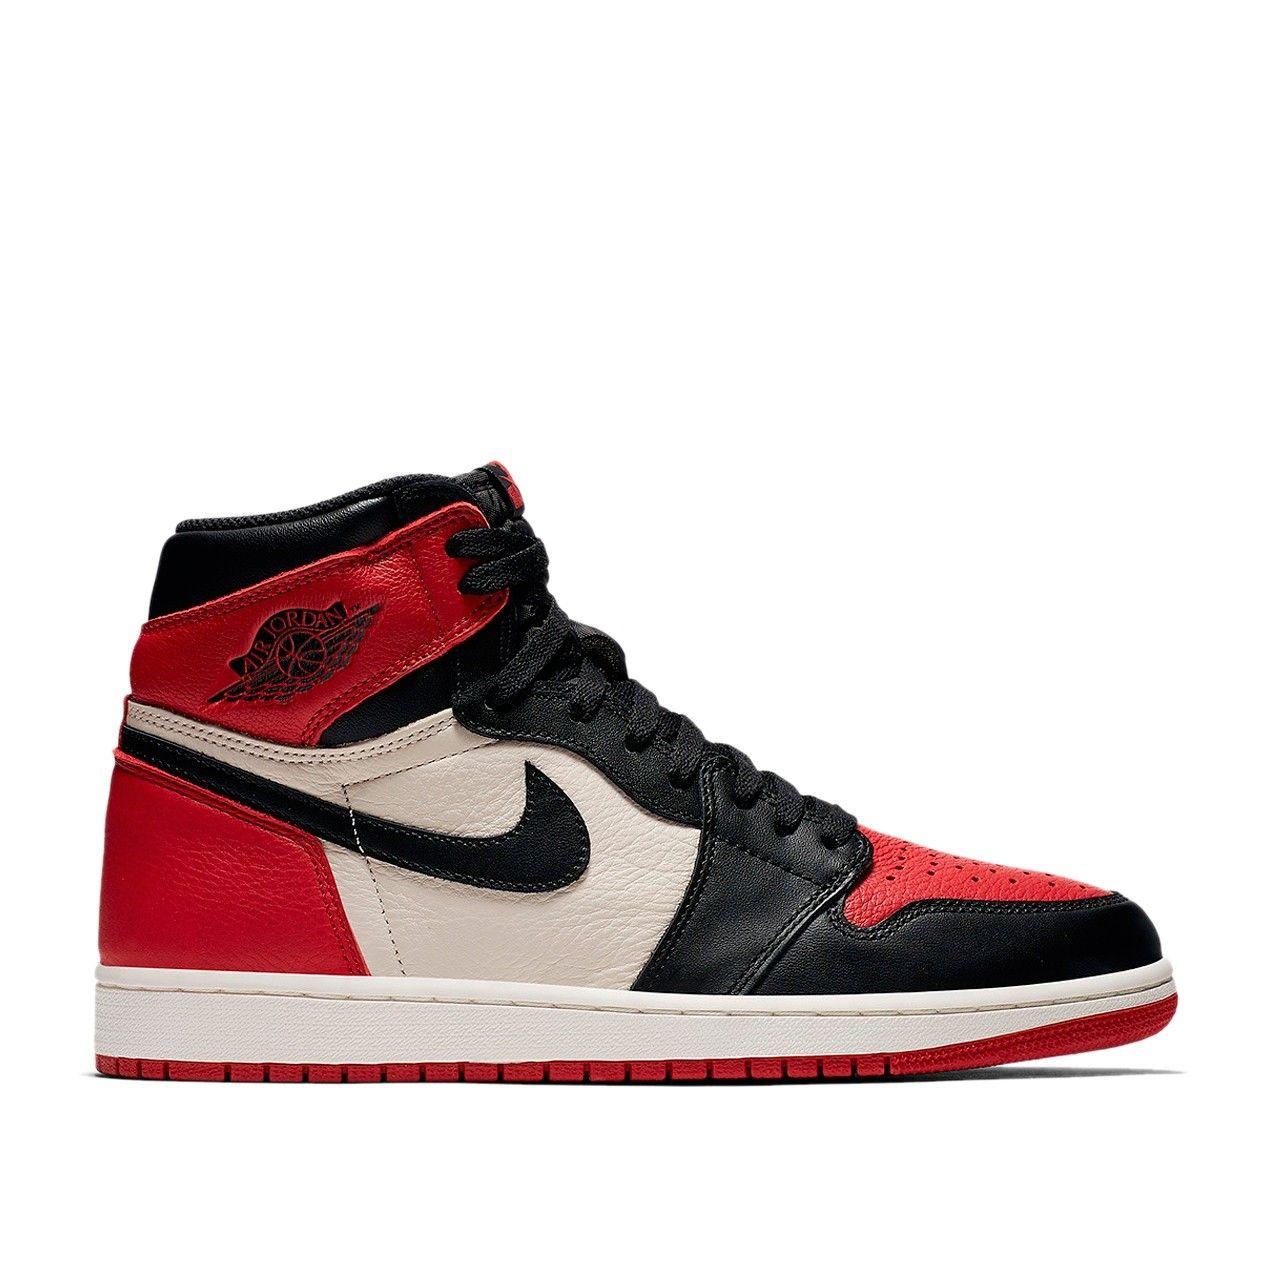 Red and Black Air Jordan Logo - Air Jordan 1 Retro High OG Bred Toe (Red / Black / White) 555088 610